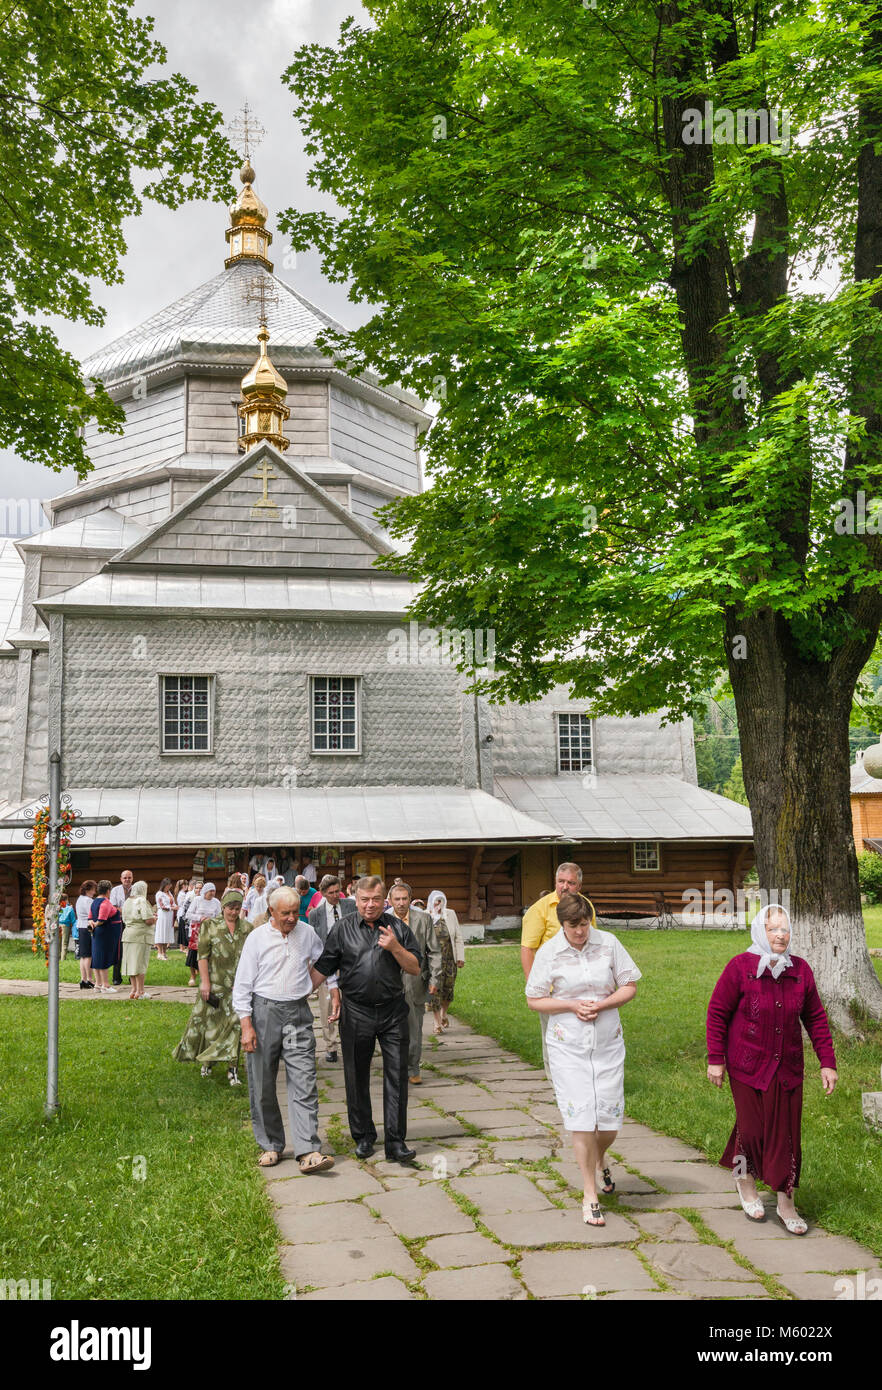 Les fidèles quitter après la messe sainte Trinité Eglise grecque-catholique, dans le village de Yapahuwa, près de la ville de Yaremtche, Carpates, Ukraine Banque D'Images